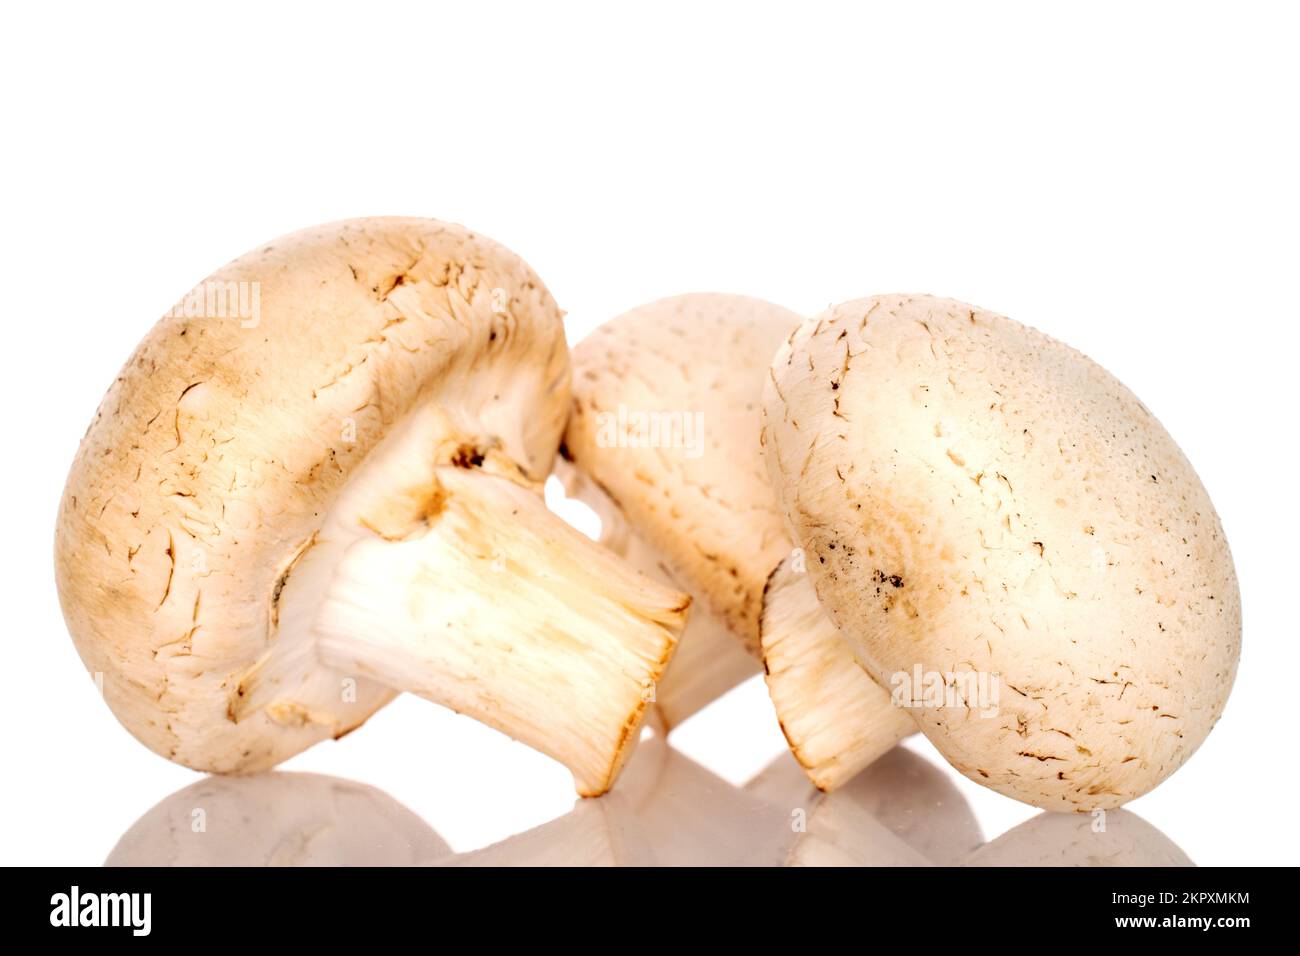 Tre funghi champignon biologici freschi appetitosi su fondo bianco. Foto Stock